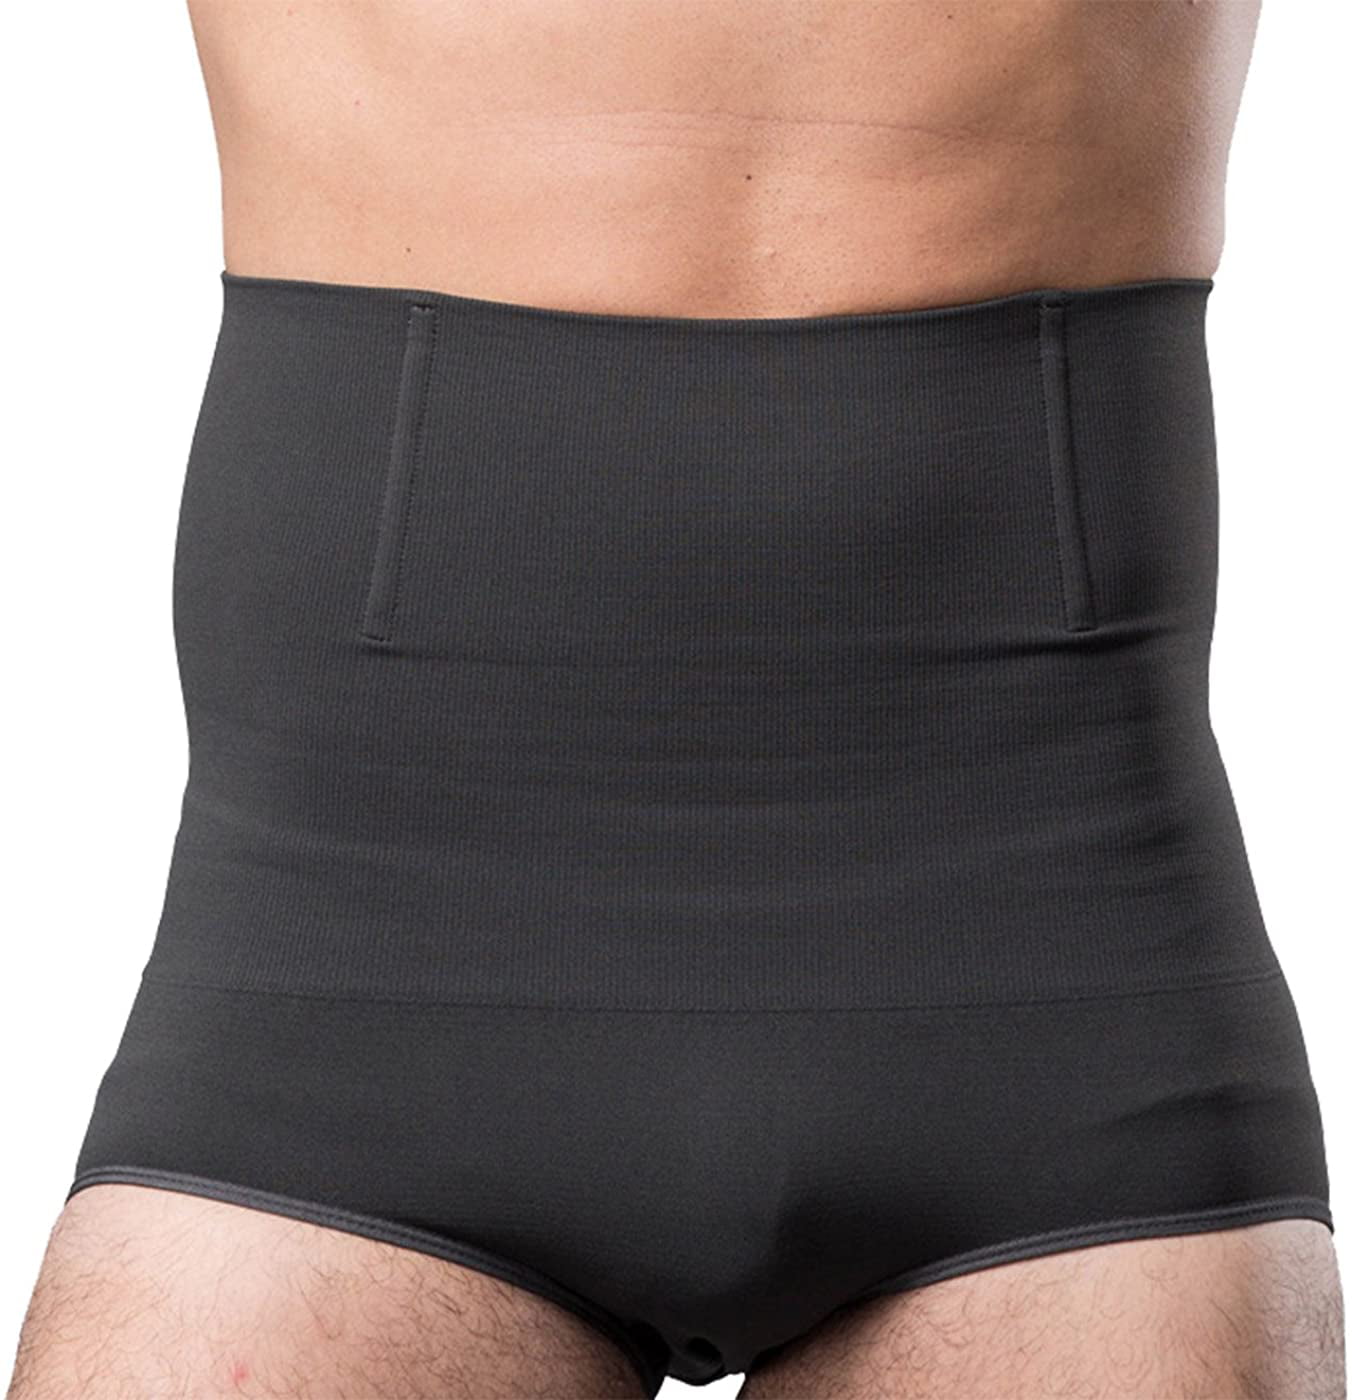 Men's Compression Waist Trainer Tummy Control High Waist Body Shaper Underwear 